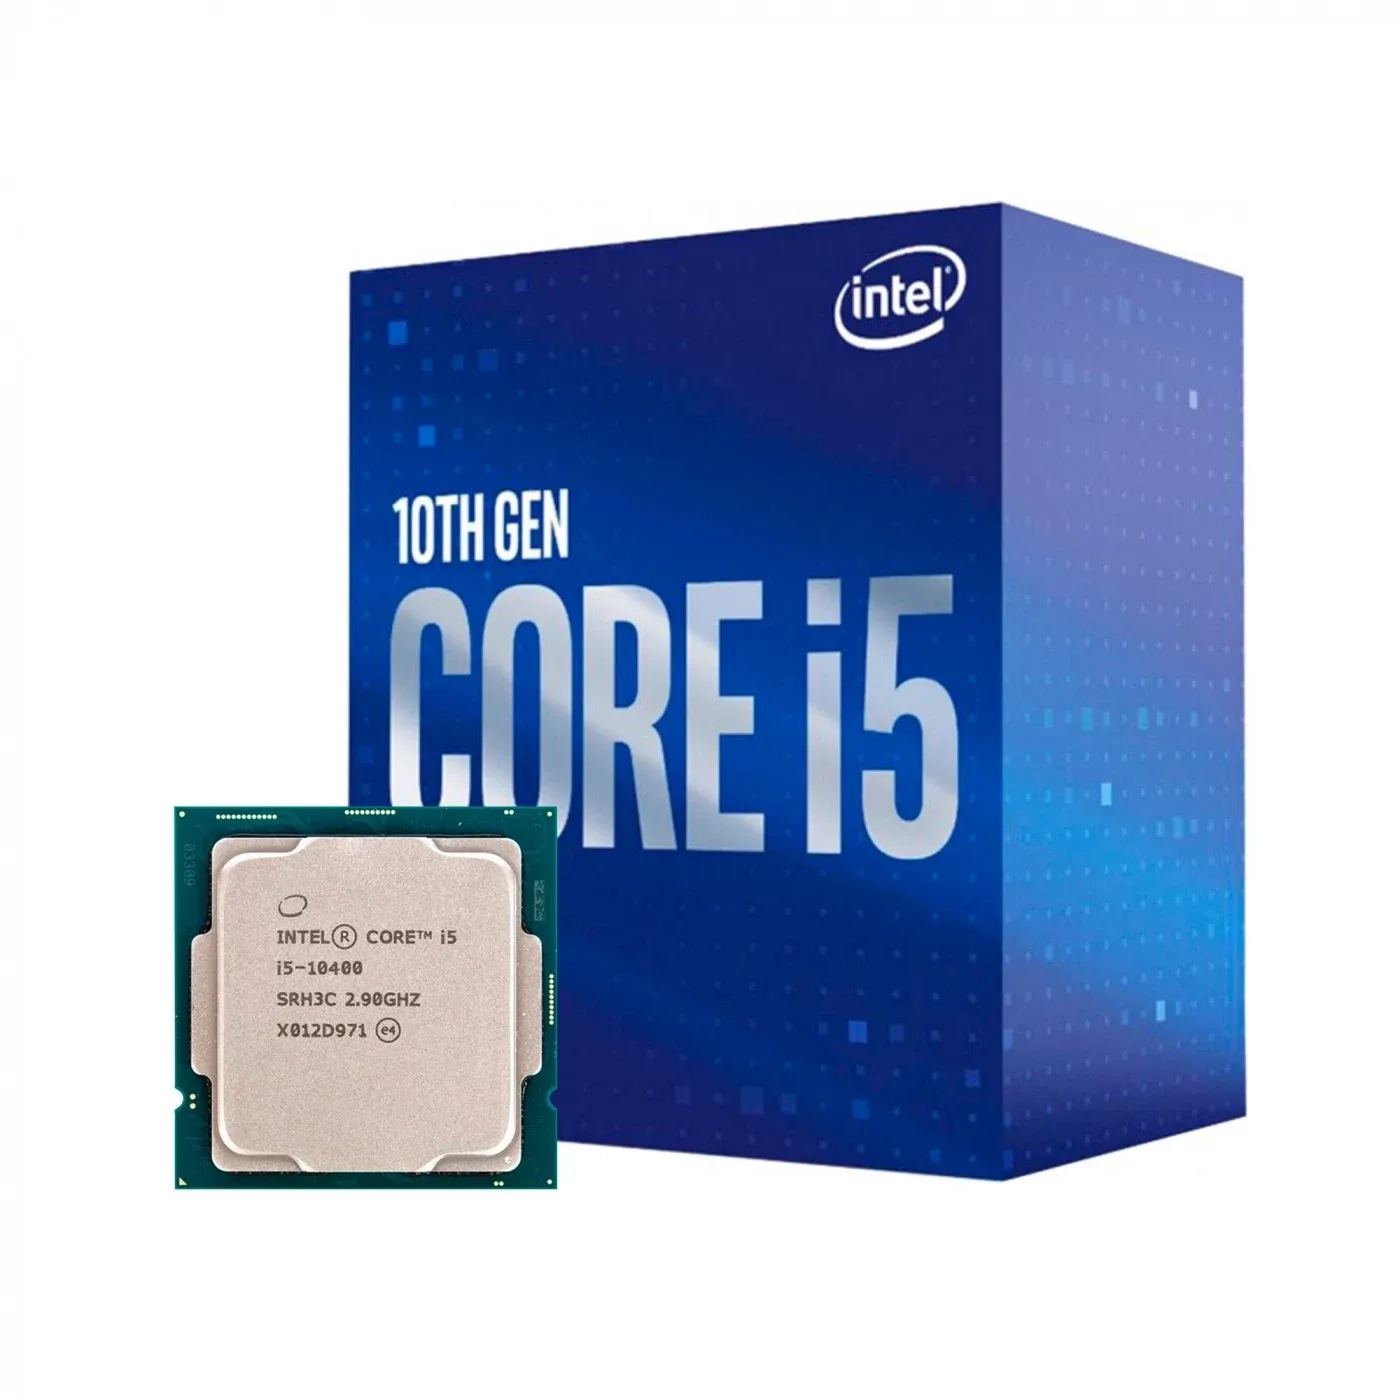 Купить Процессор INTEL Core i5-10400 (2.9GHz, 12MB, LGA1200) BOX (BX8070110400) (Trade-In SN U3T01F5101699) - фото 1